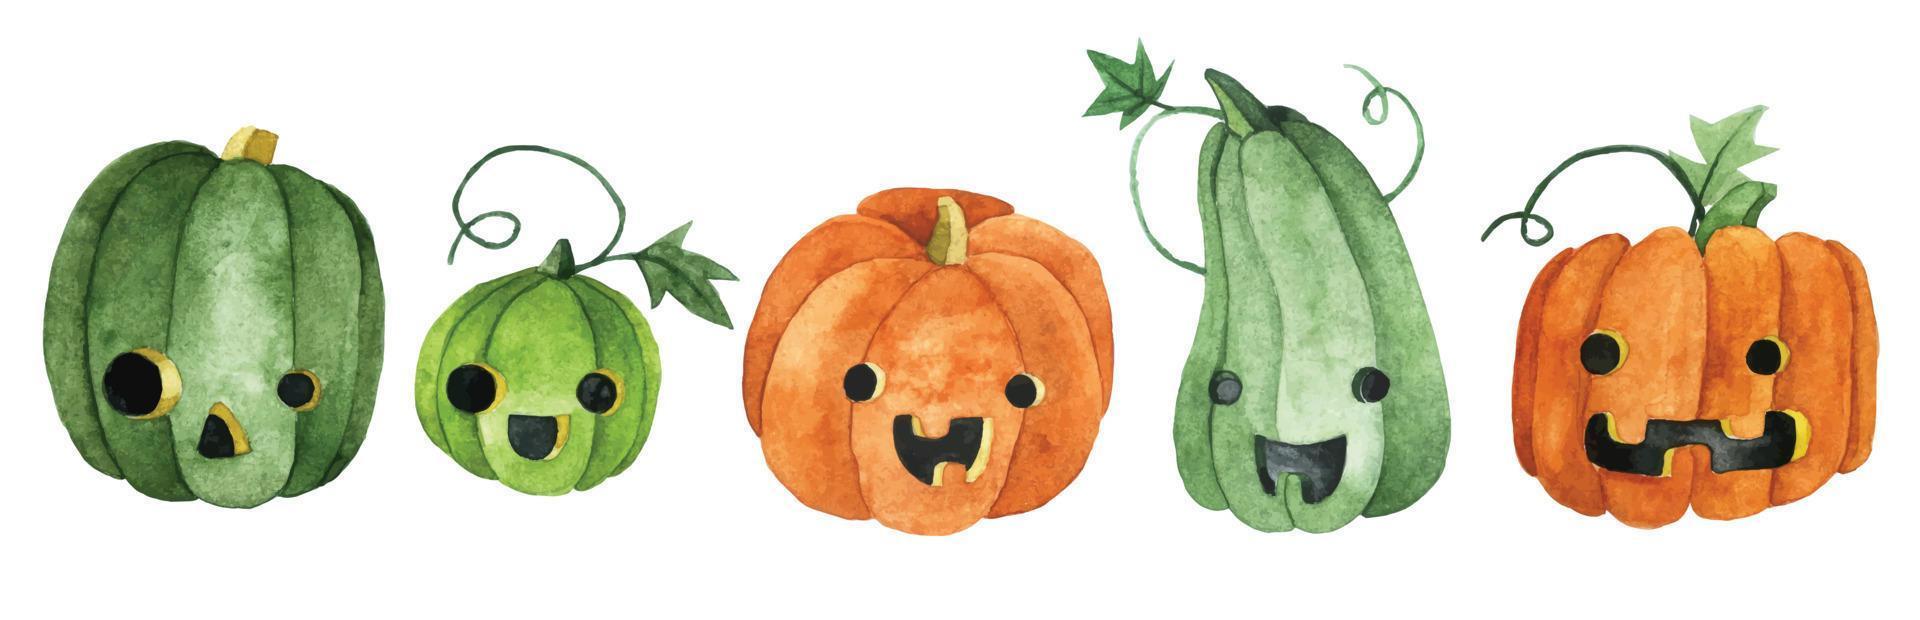 dibujo de acuarela, conjunto de lindas calabazas de halloween. calabazas verdes y naranjas, con caras graciosas, linda foto para niños. vector